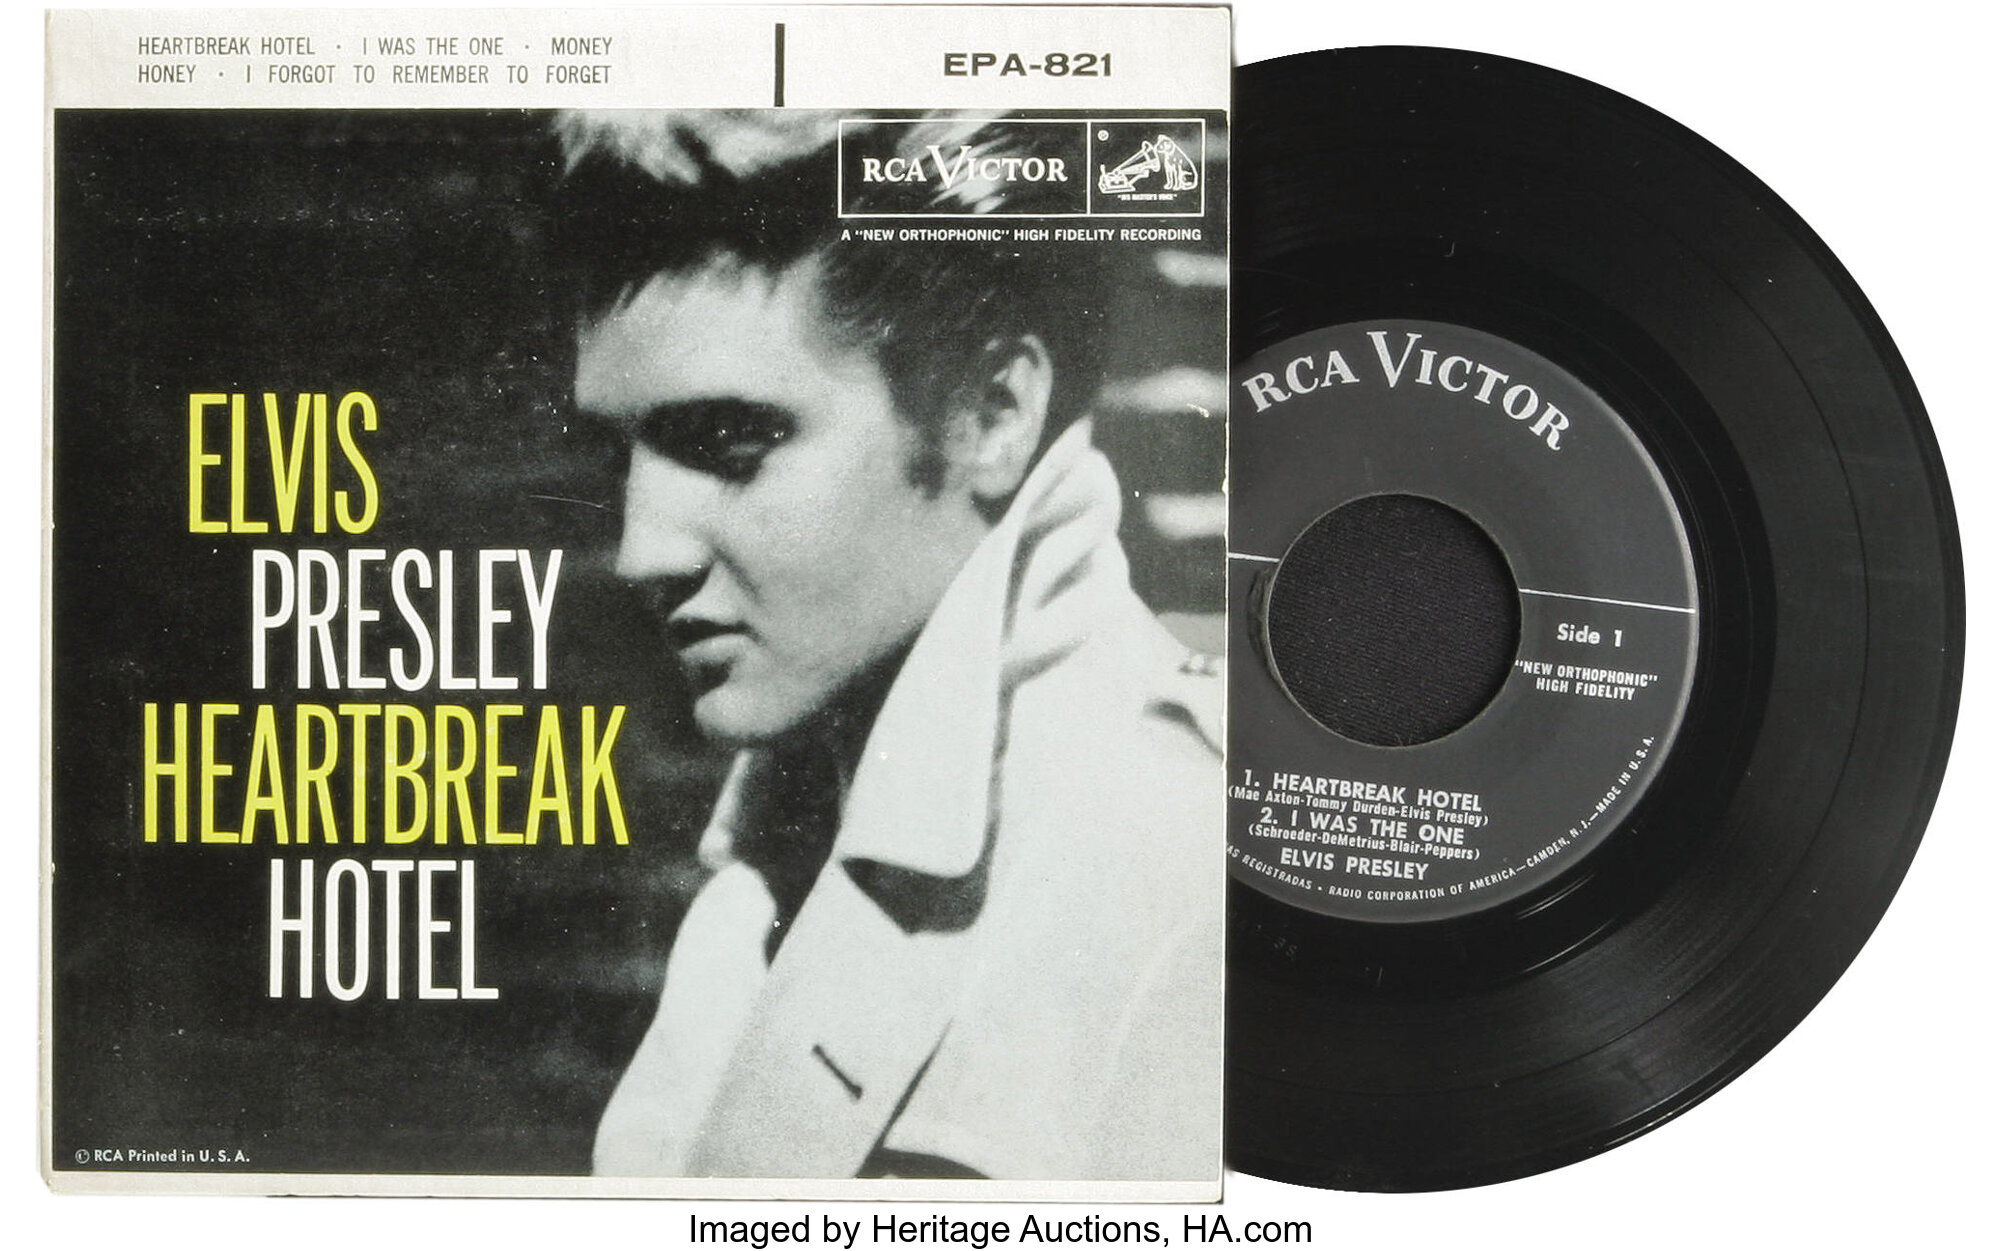 Elvis Presley "Heartbreak Hotel" No Dog Label EP RCA 821 (1956 ...